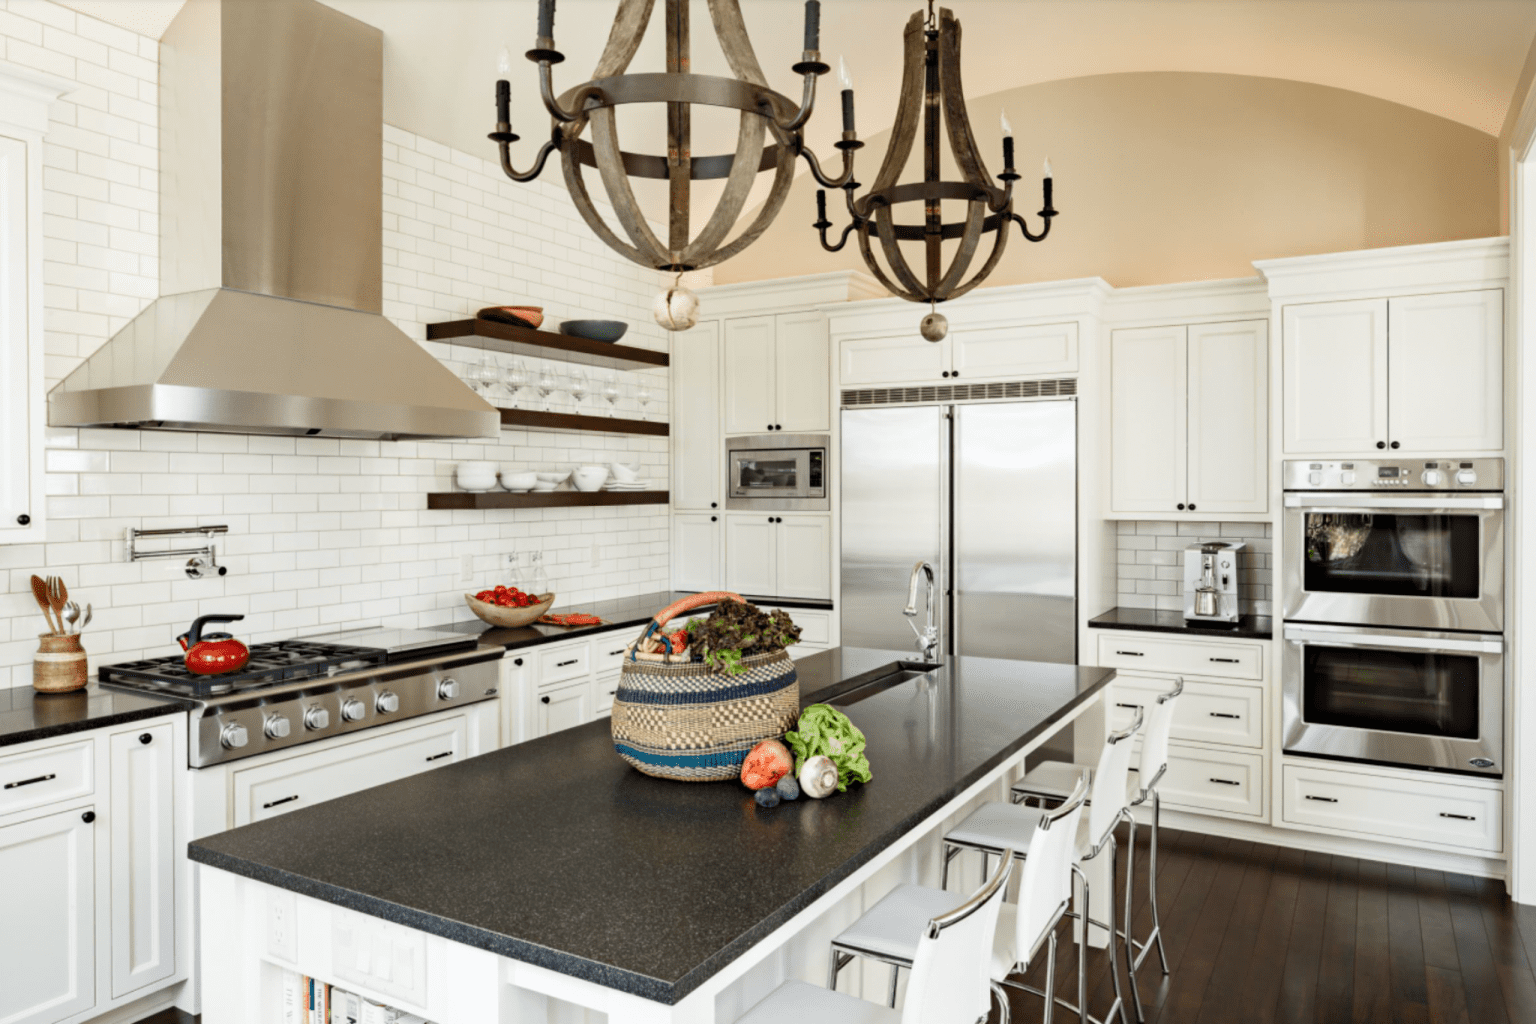 Top Trends In Kitchen Countertop Design Sebring Design Build 10 1536x1024 